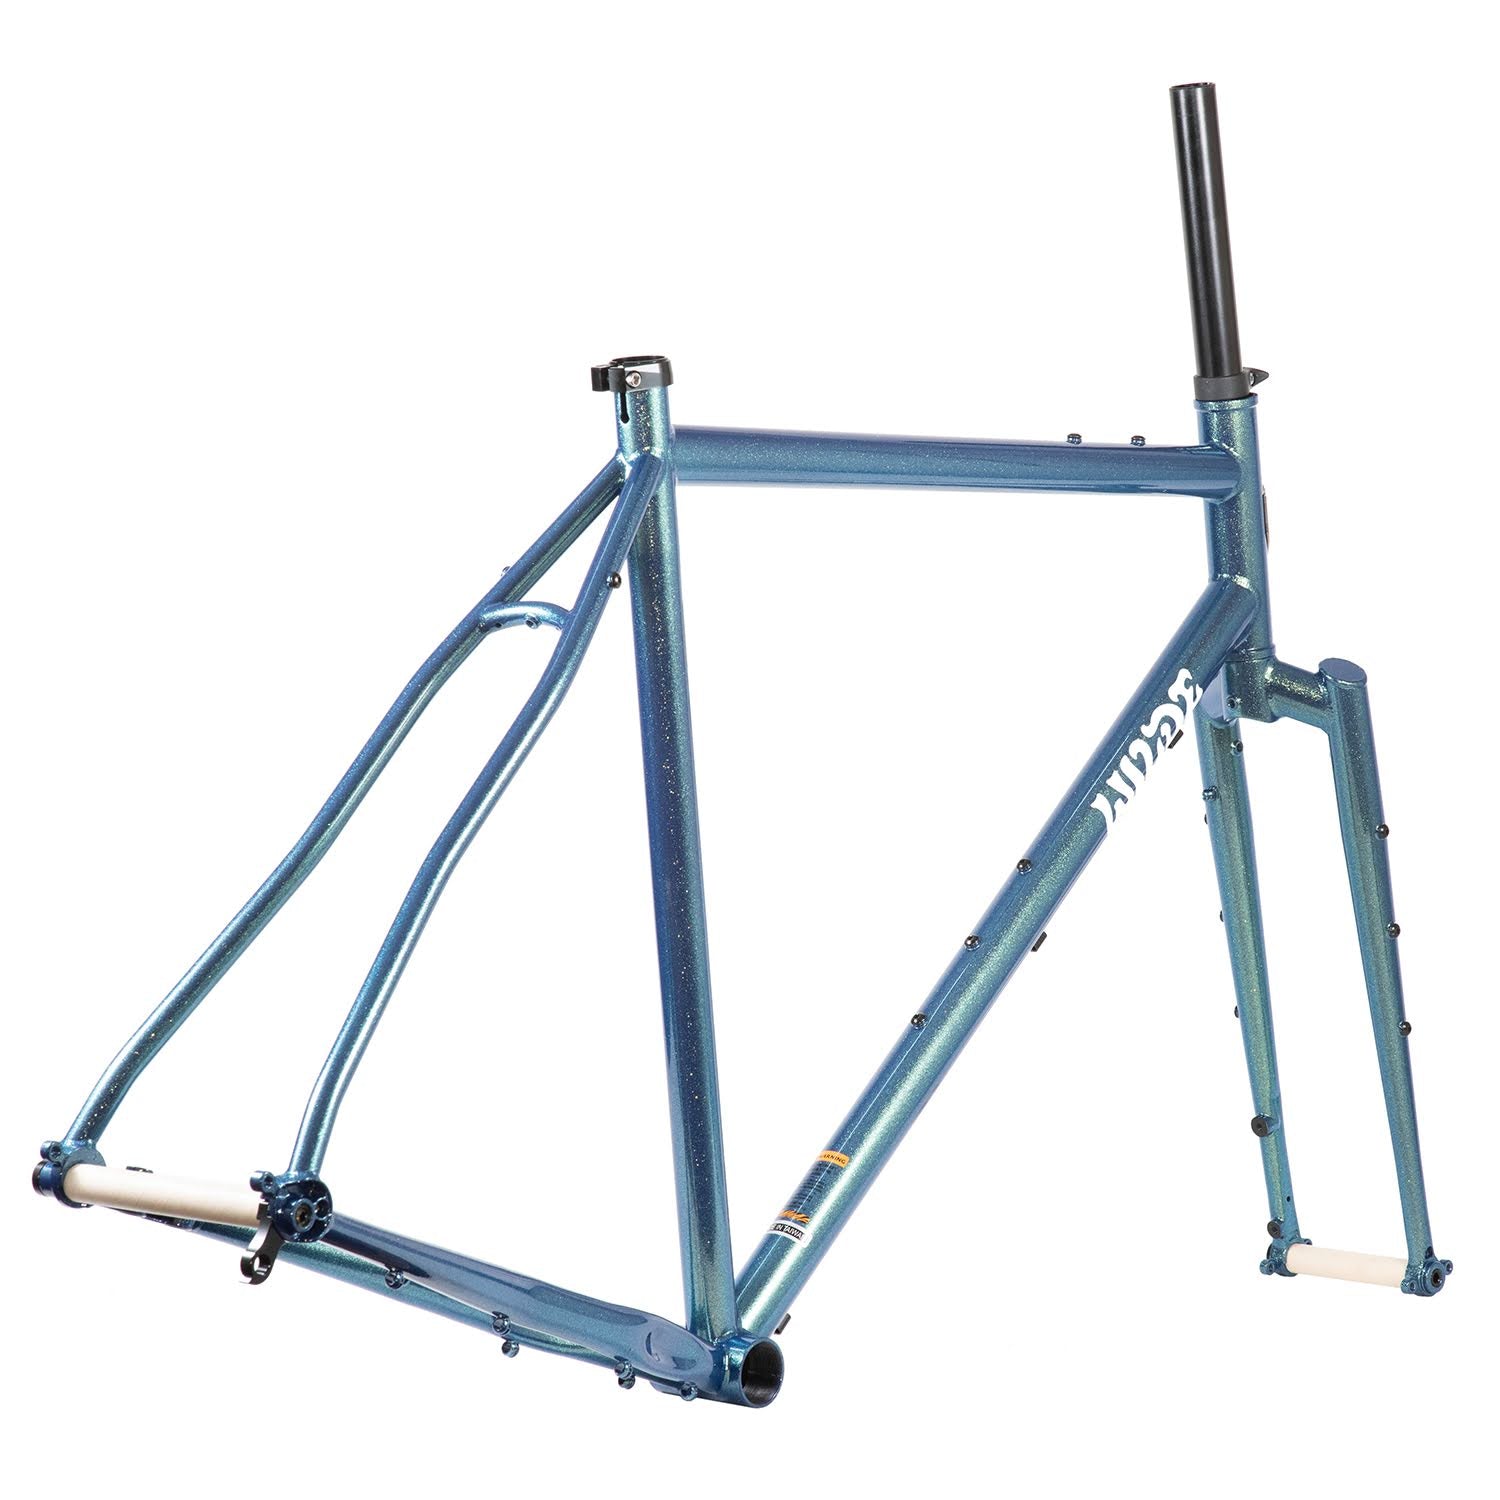 WILDE BICYCLE CO Rambler Frame Set